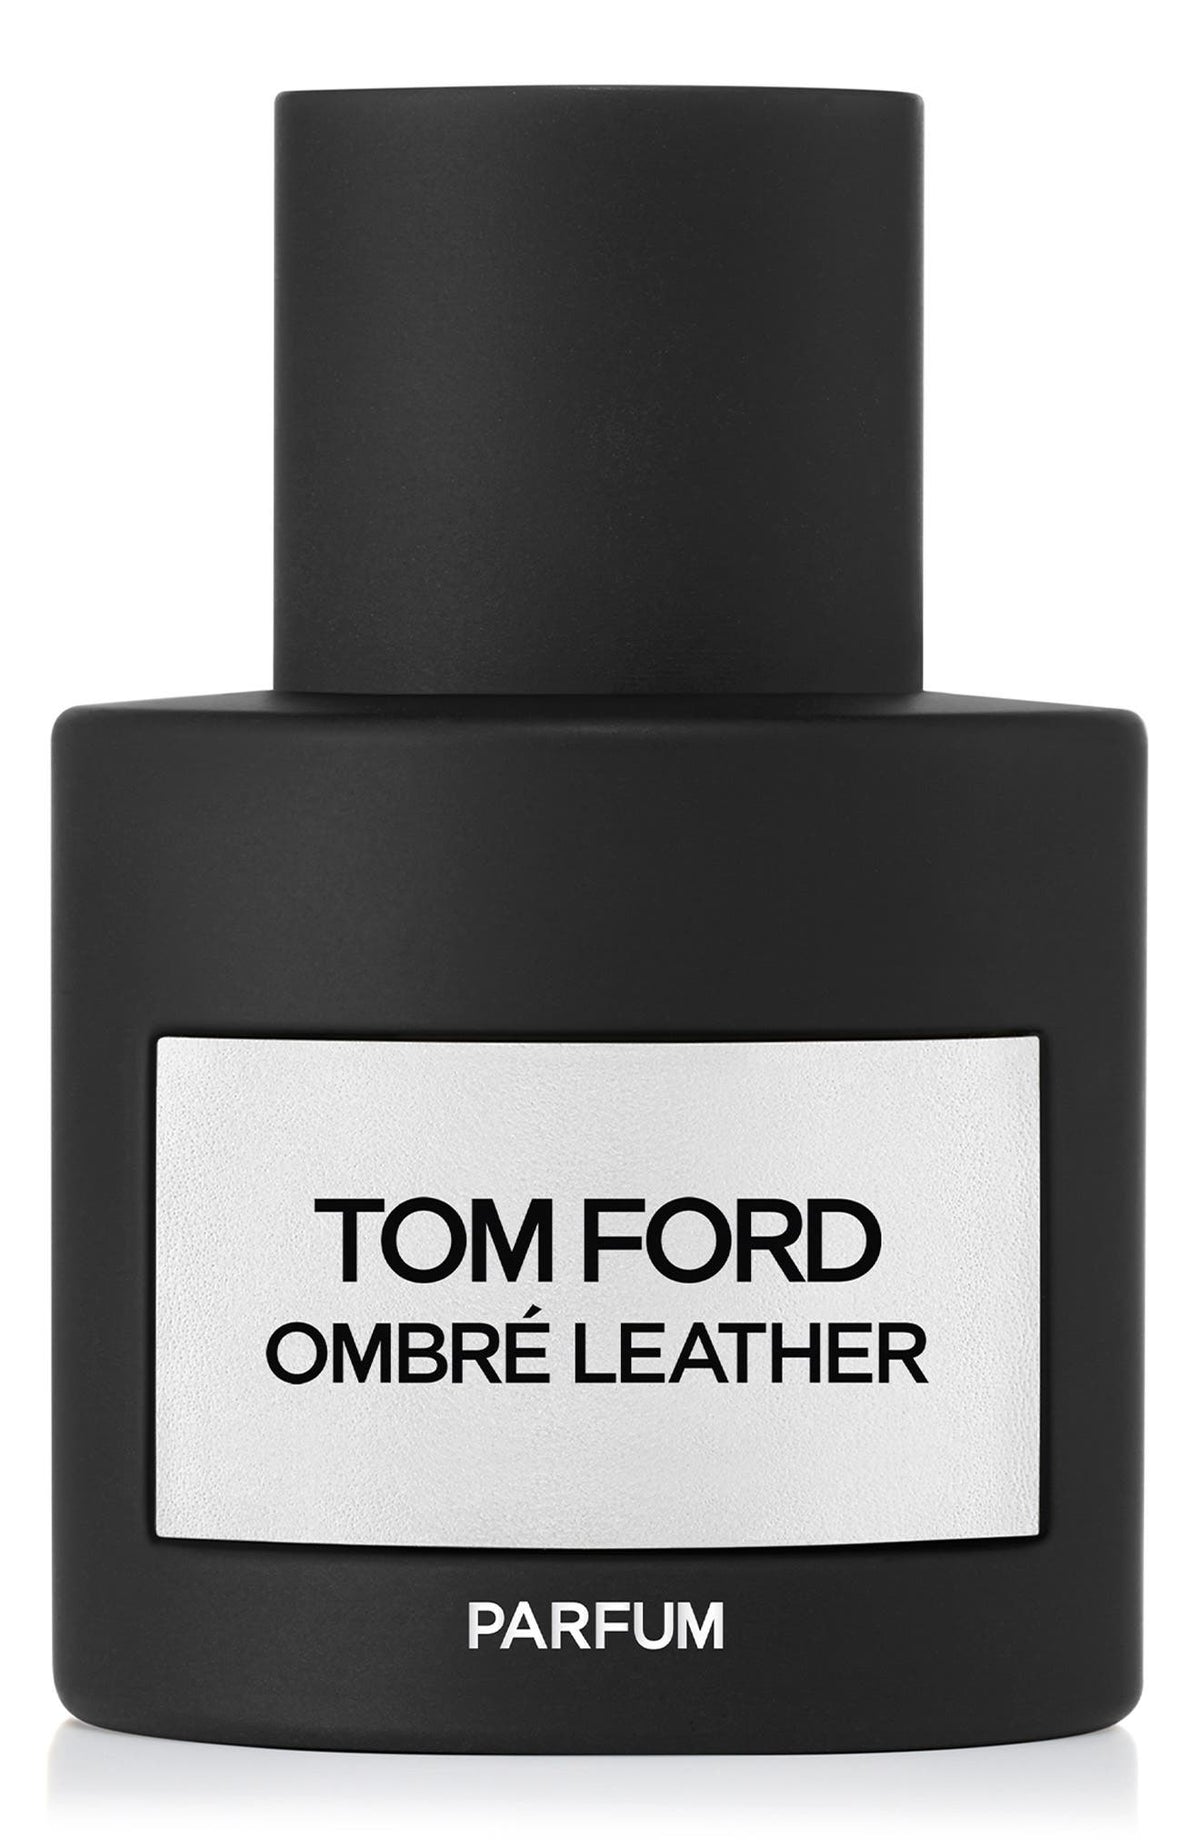 TOM FORD Ombré Leather Parfum Spray 1.7 oz